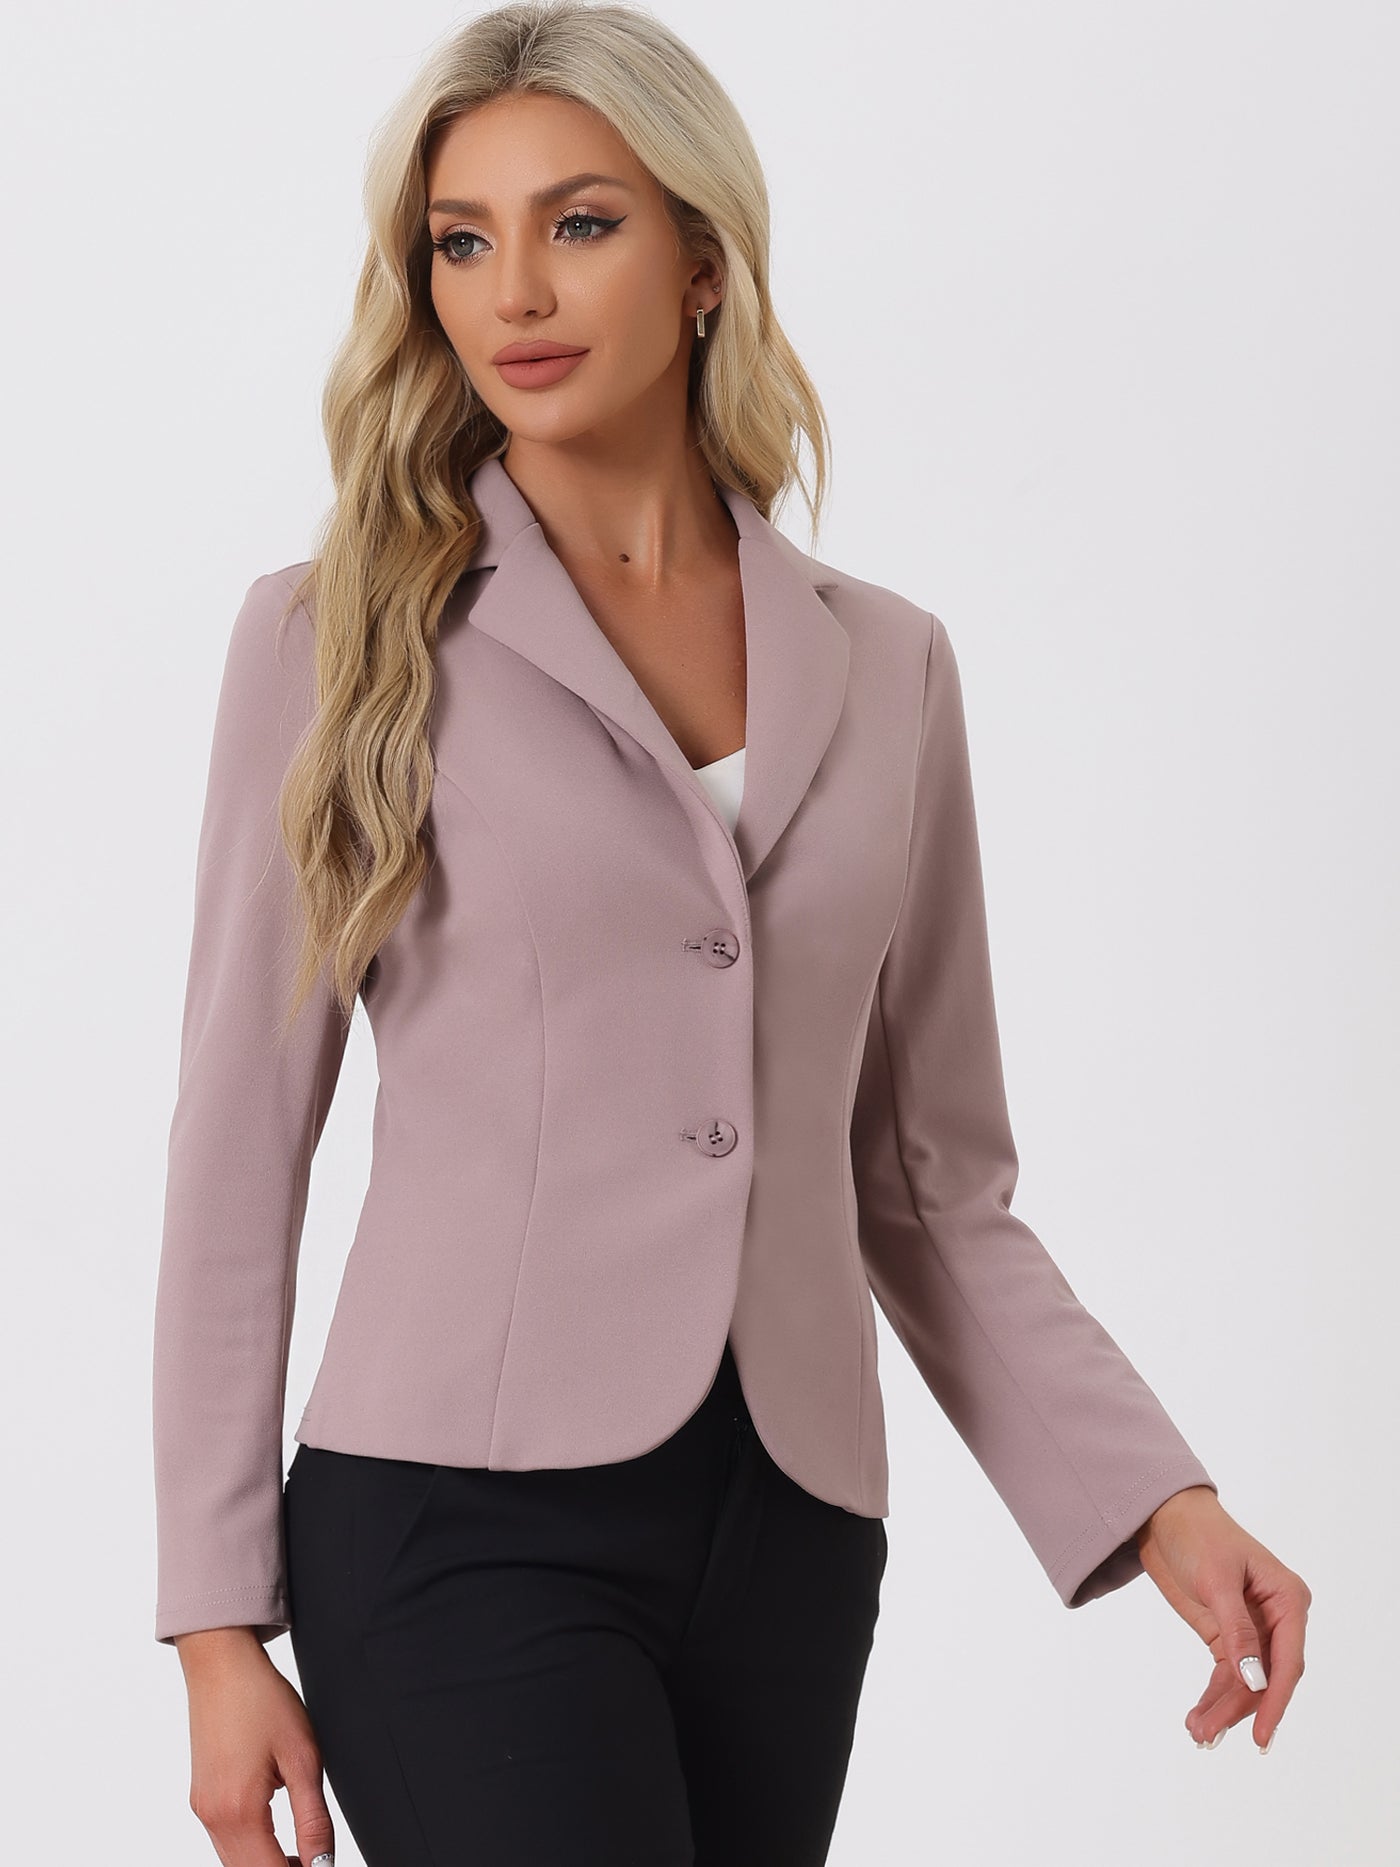 Allegra K Solid Work Office Lapel Collar Stretch Jacket Suit Blazer